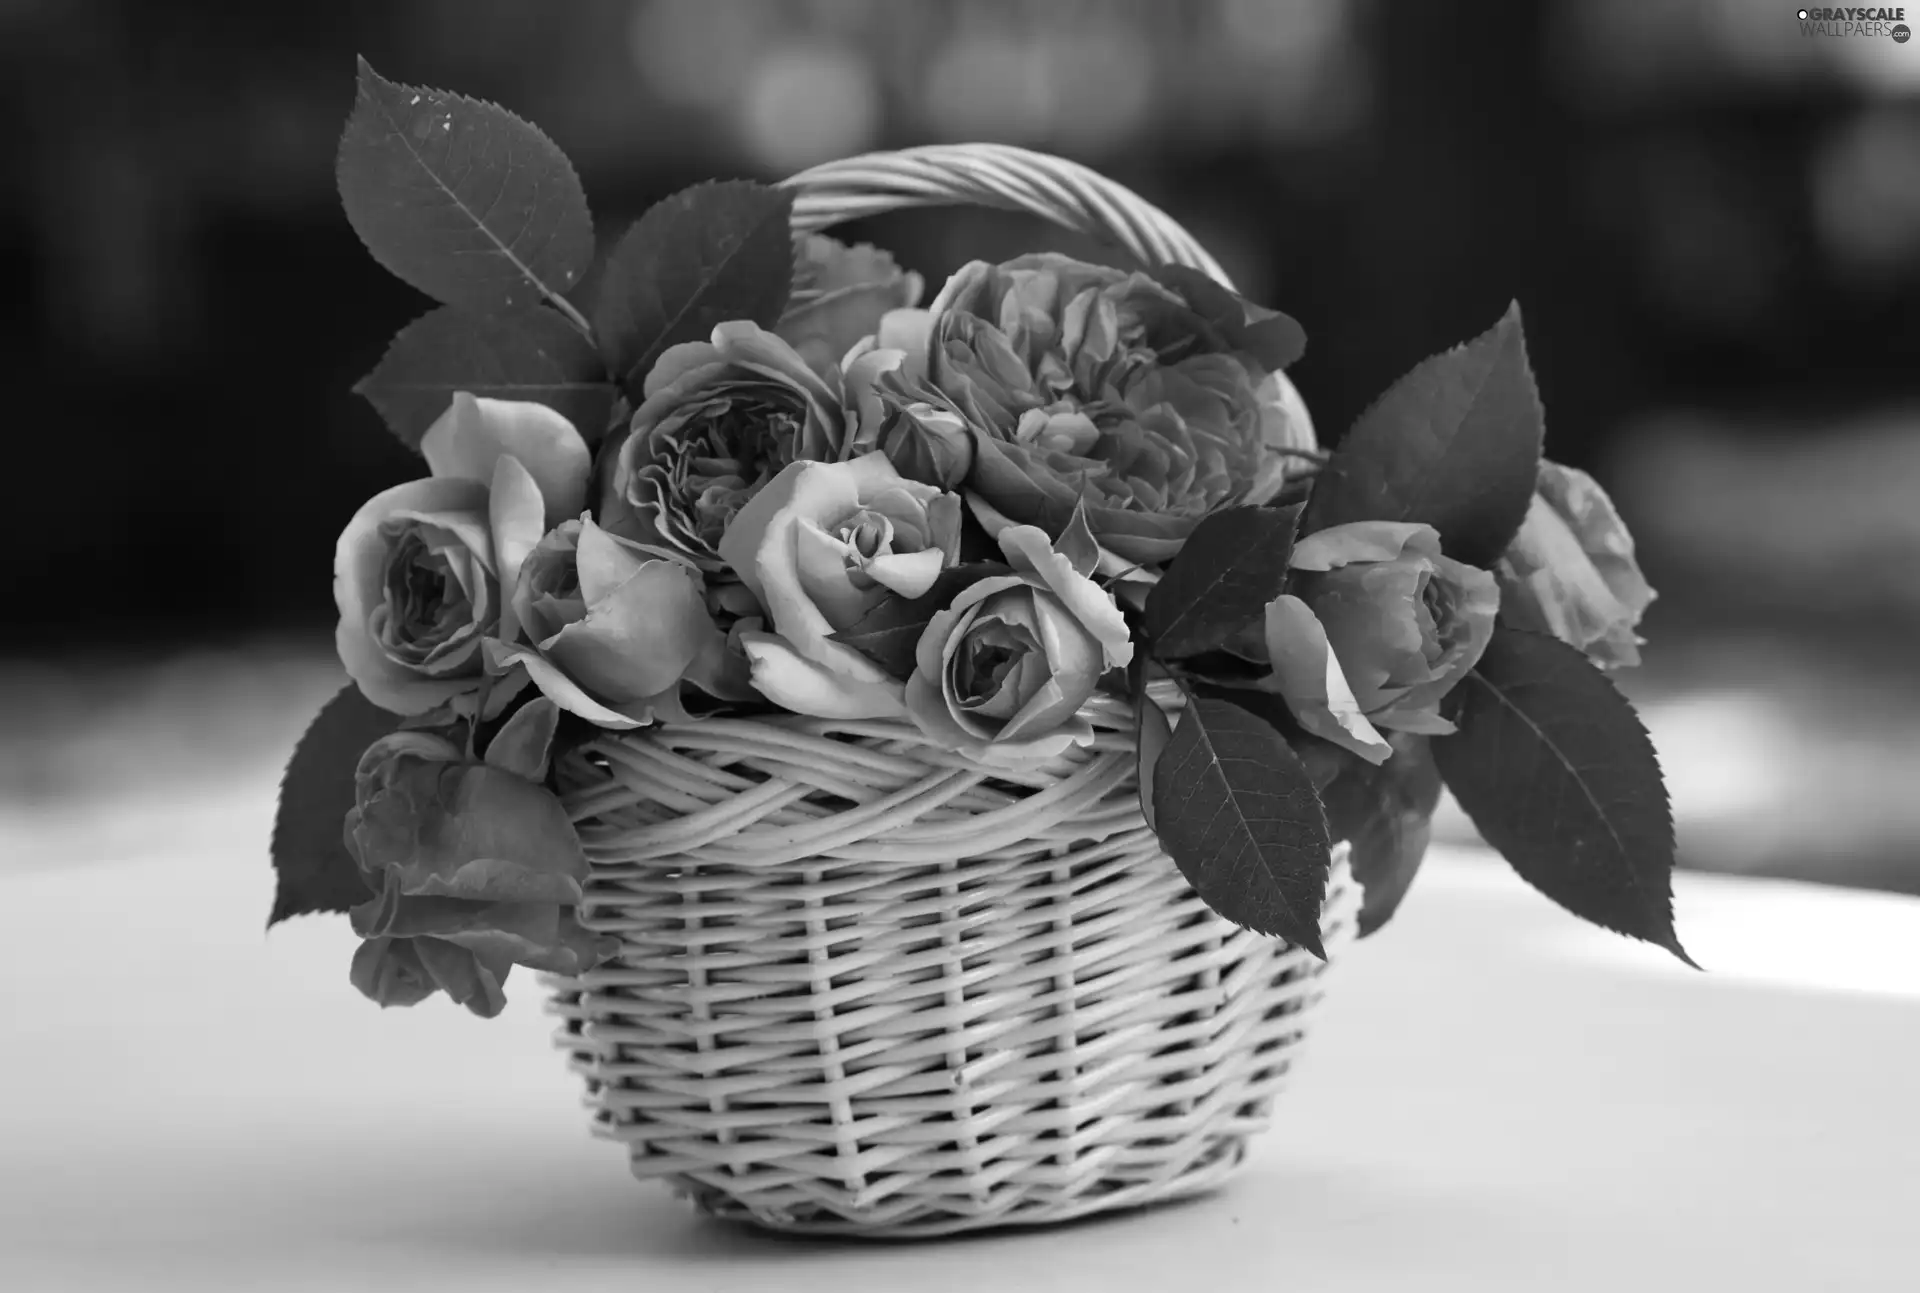 roses, basket